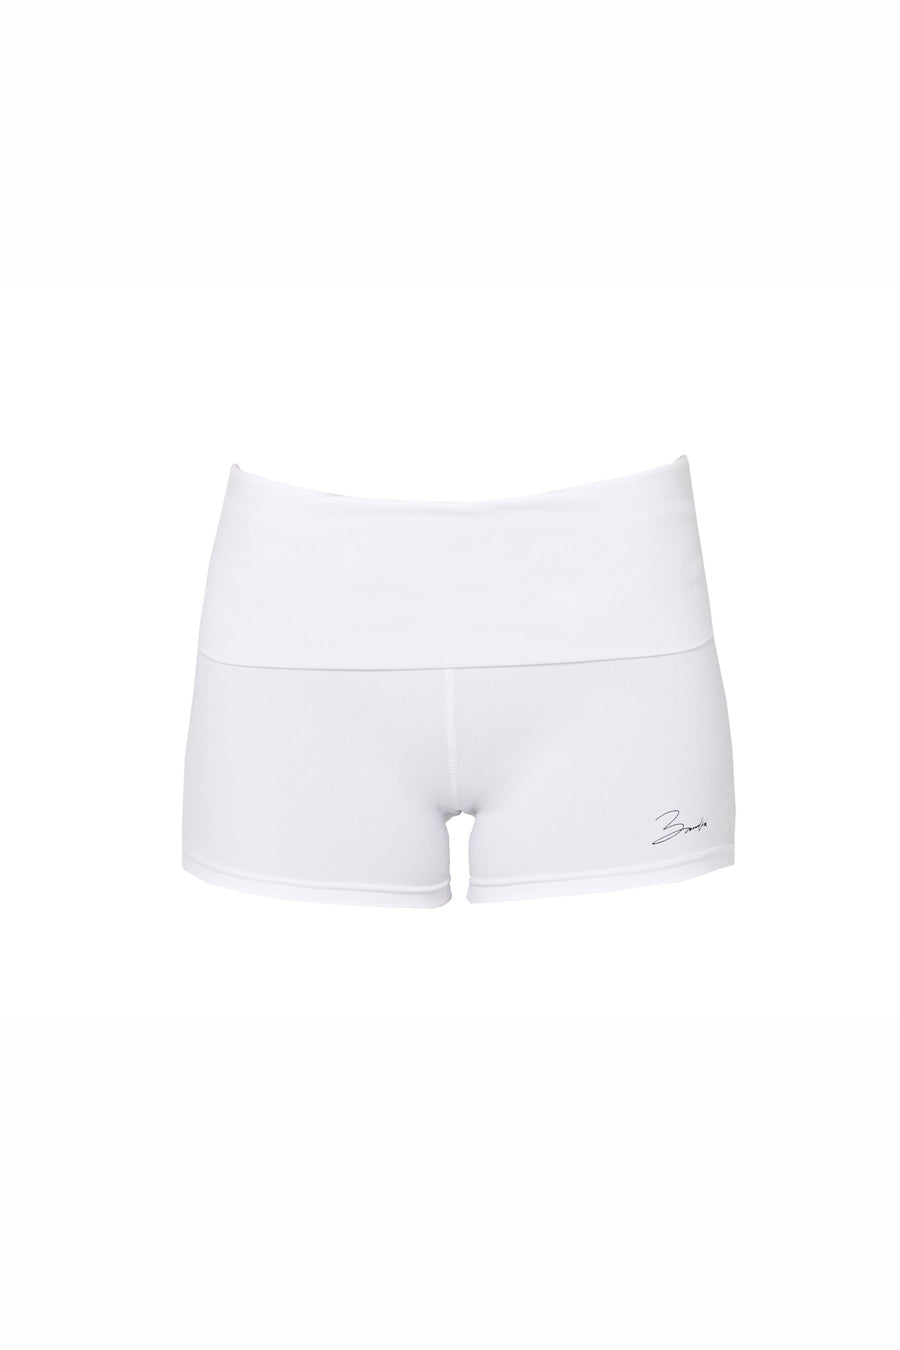 BASE shorts - bianco  -  CLOTHING  -  B Ā M B A S W I M